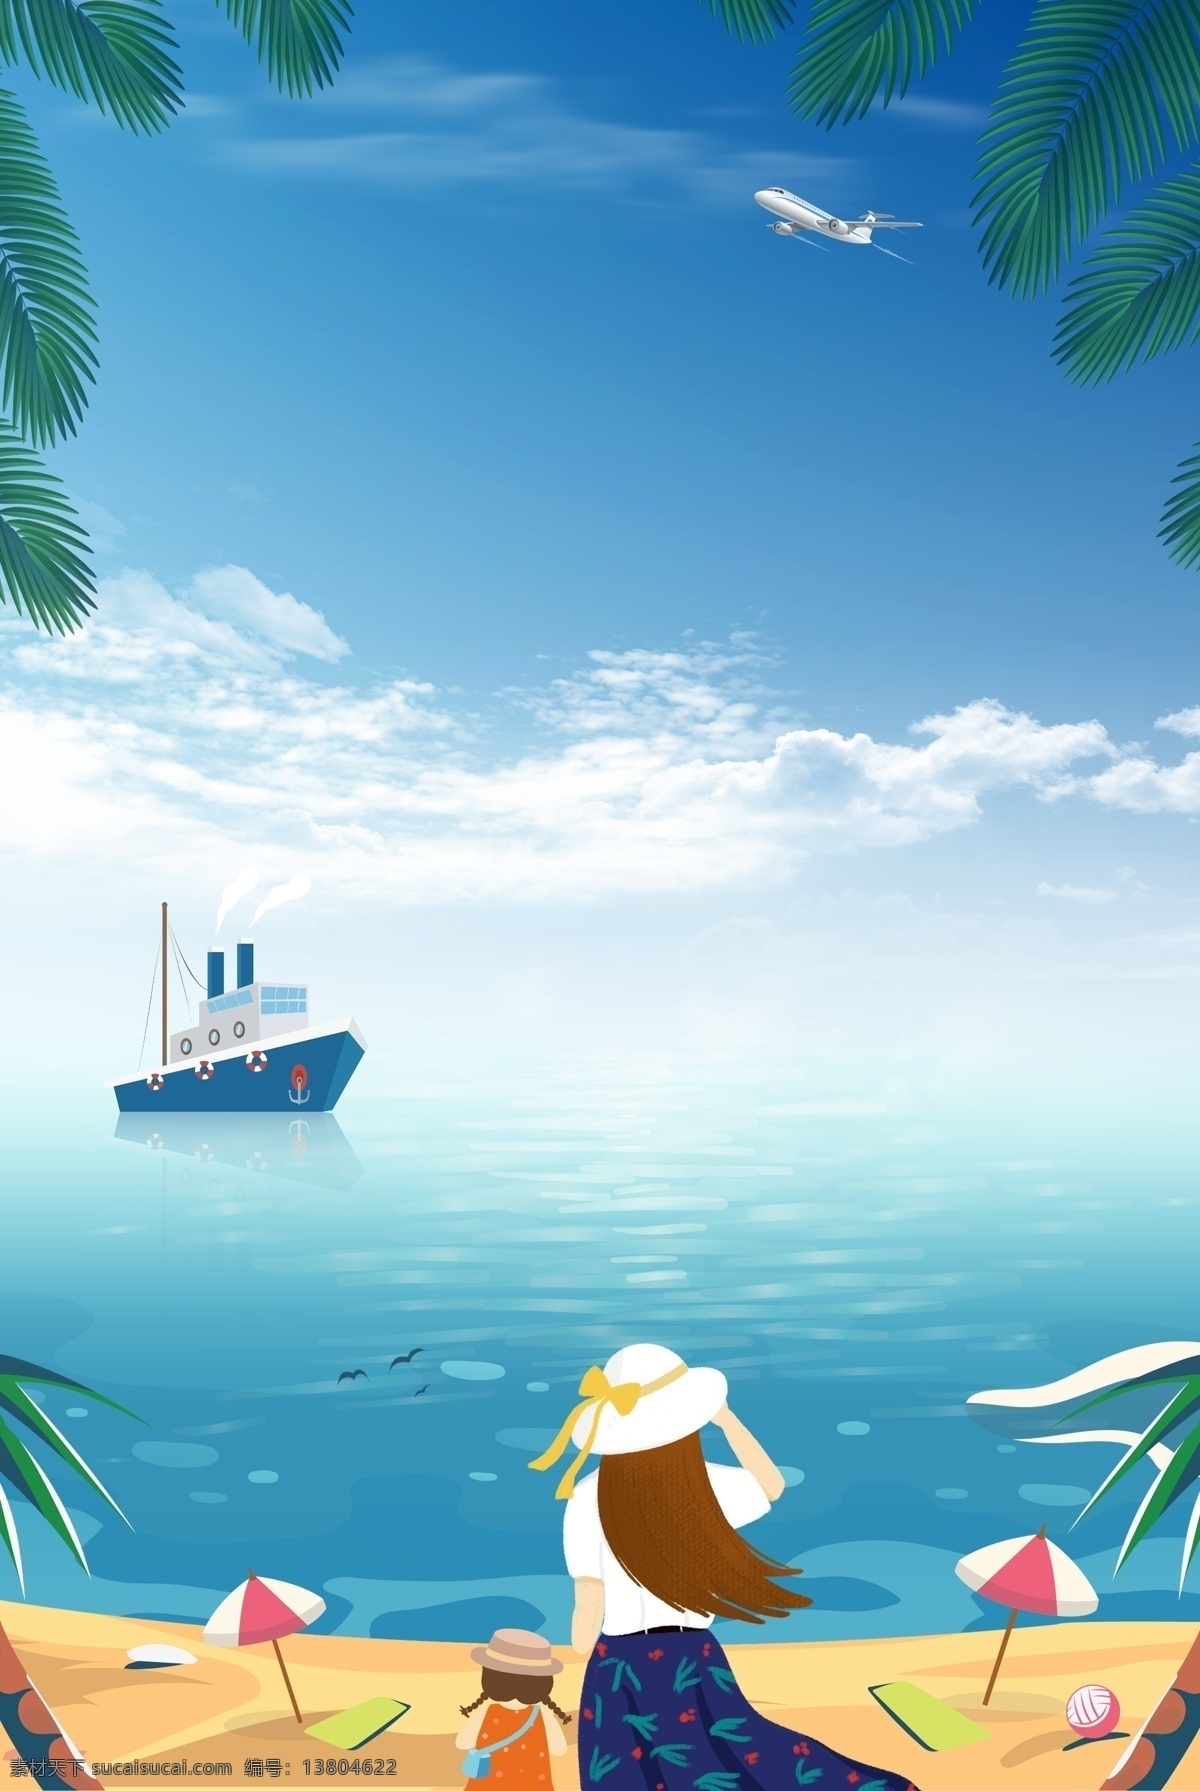 创意 海边 旅游 合成 背景 海报 轮船 海岛游 亲子游 度假 简约 卡通